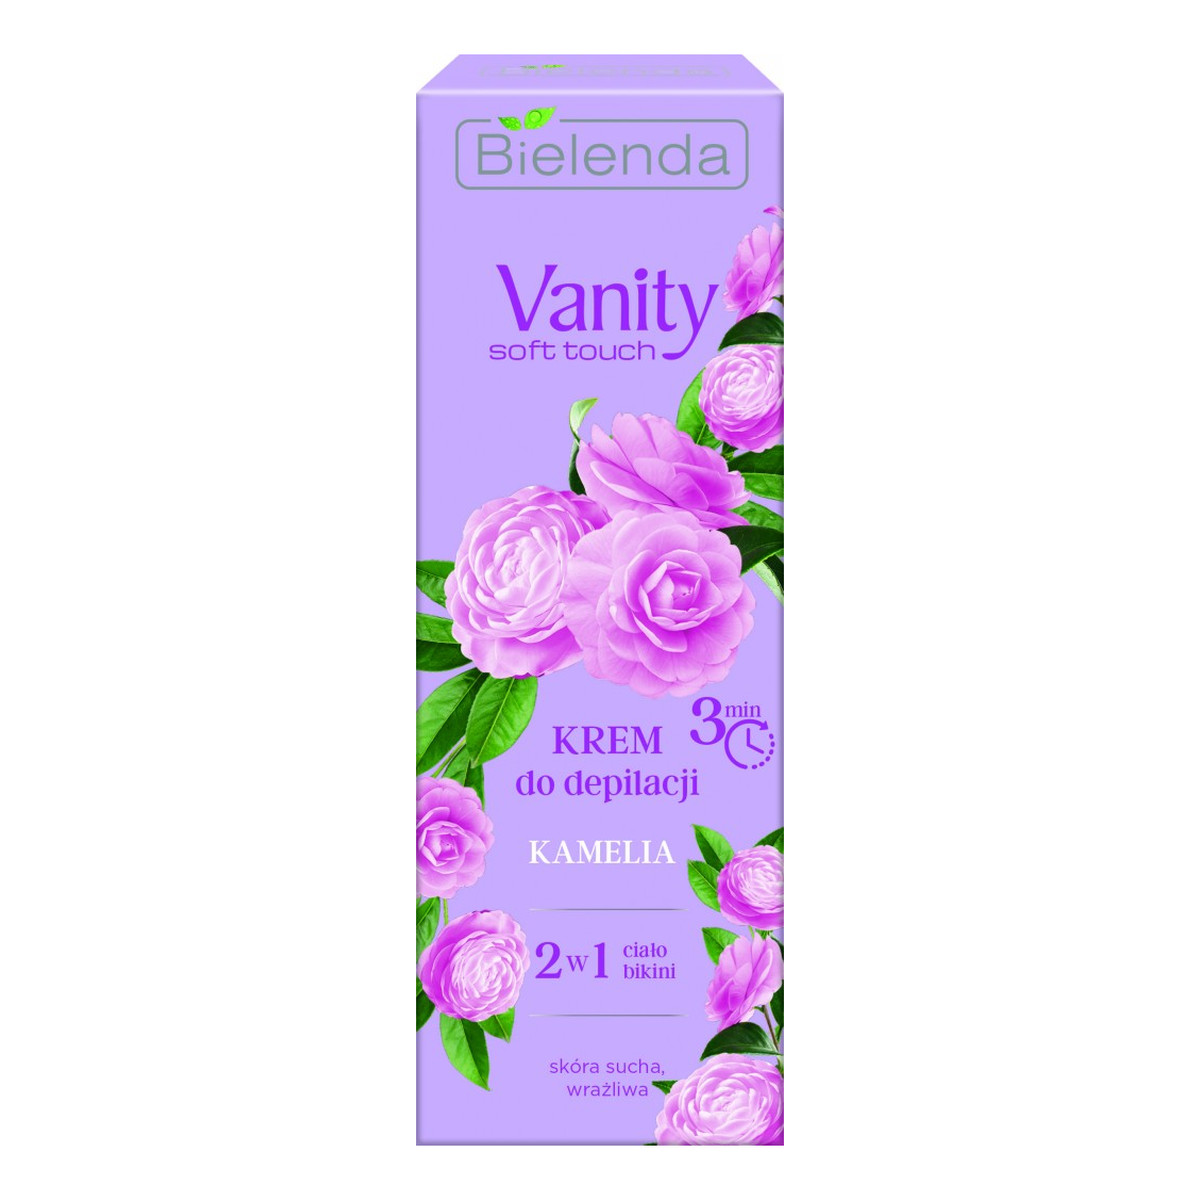 Bielenda Vanity Soft Touch Krem do depilacji 2w1 Kamelia 100ml